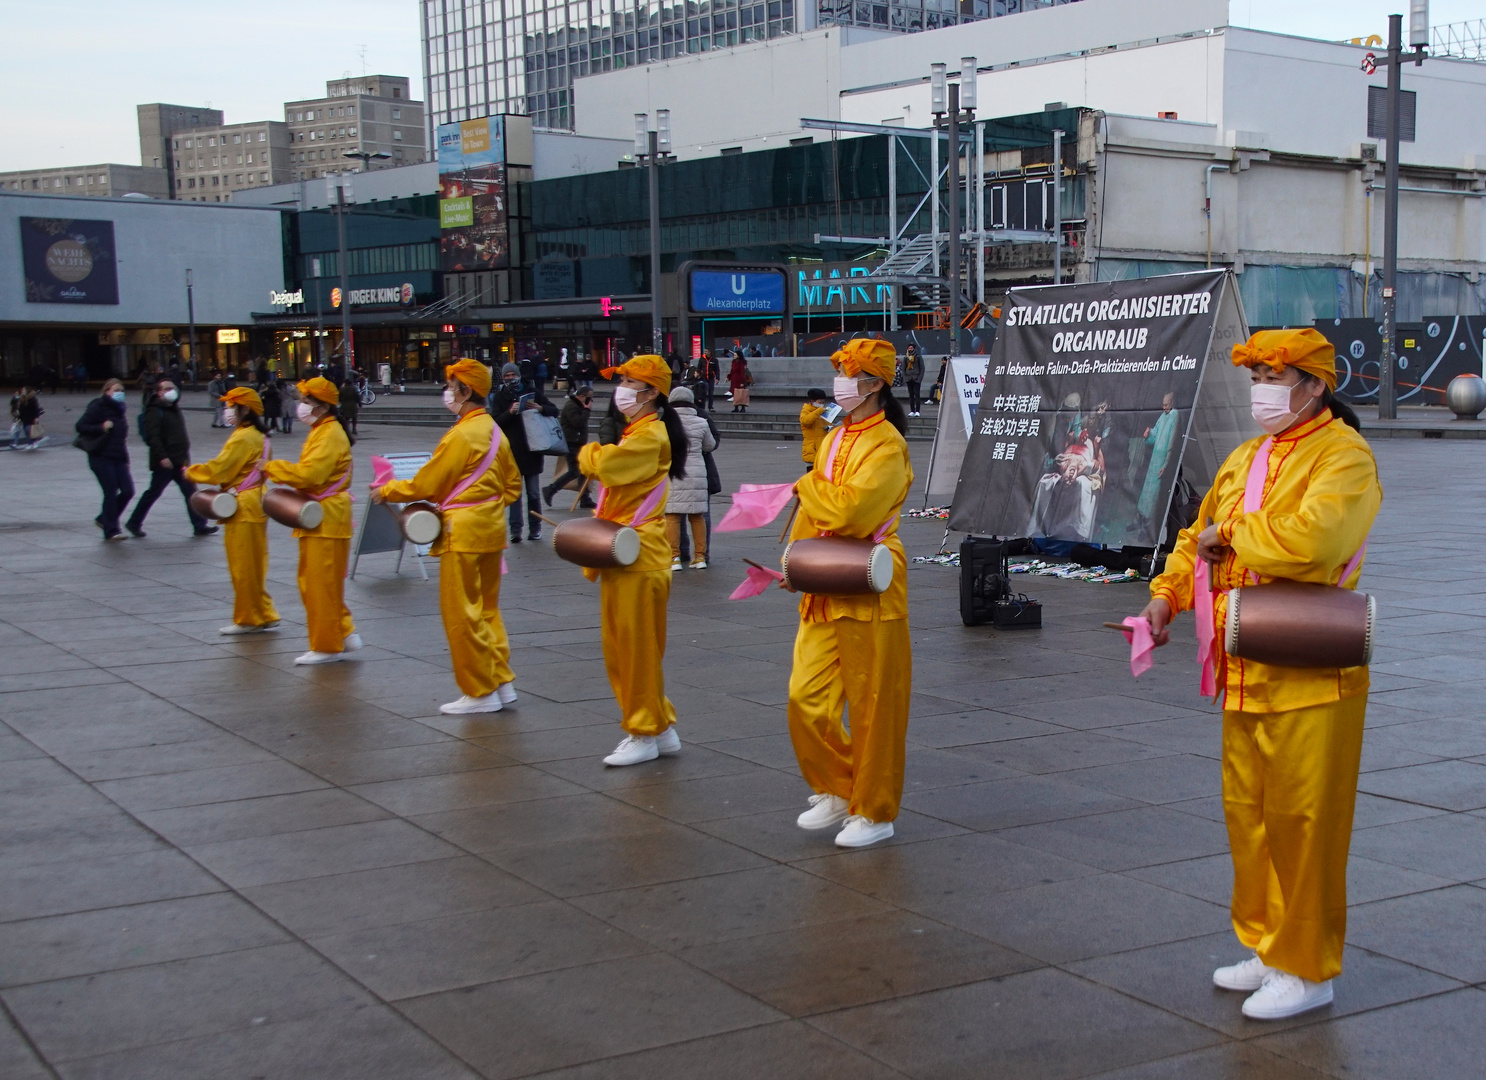 Demo gegen den Organraub an internierten Falun-Gong-Praktizierenden